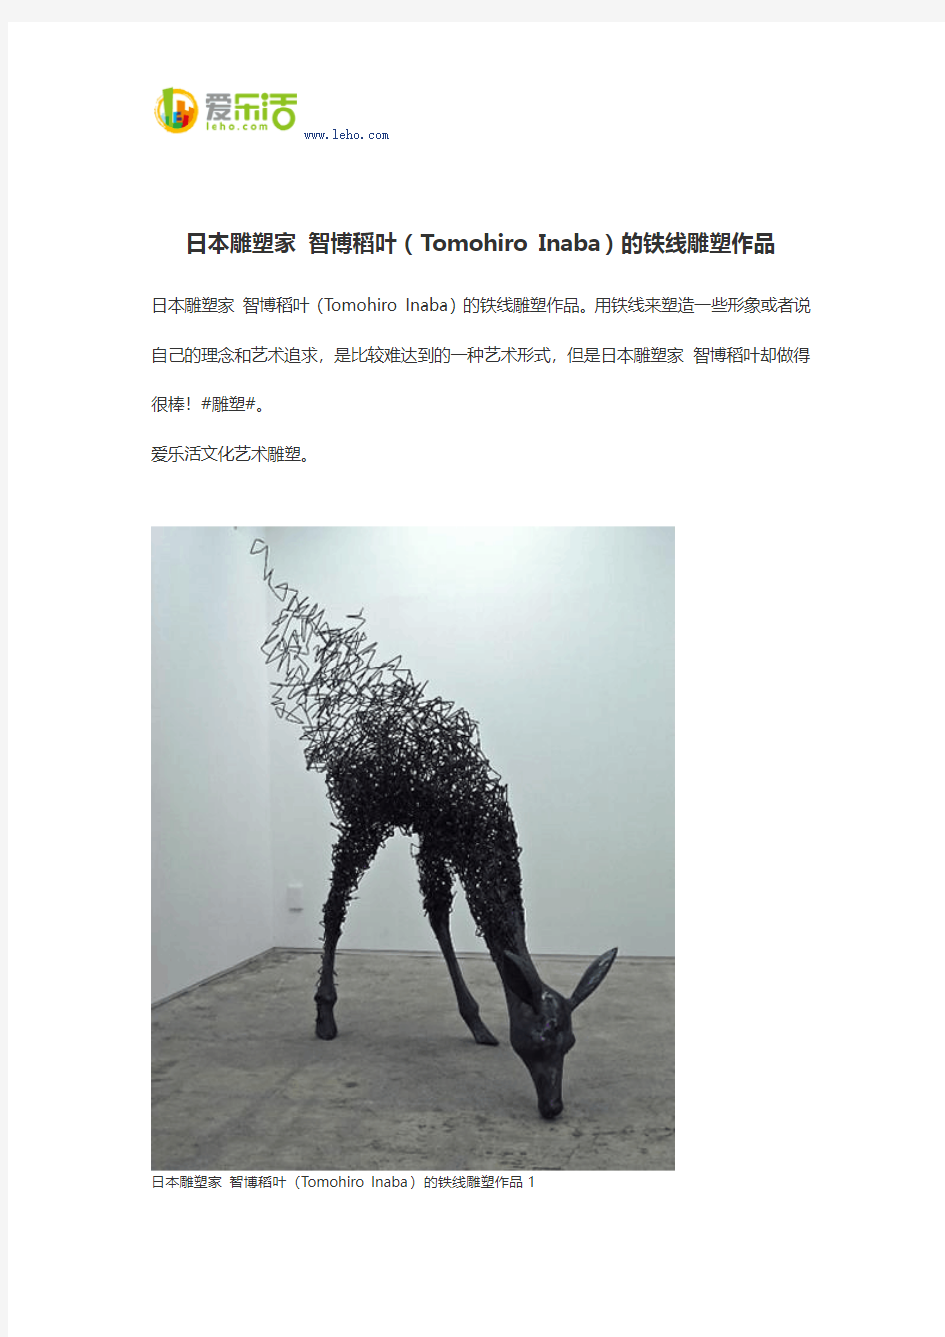 日本雕塑家 智博稻叶(Tomohiro Inaba)的铁线雕塑作品